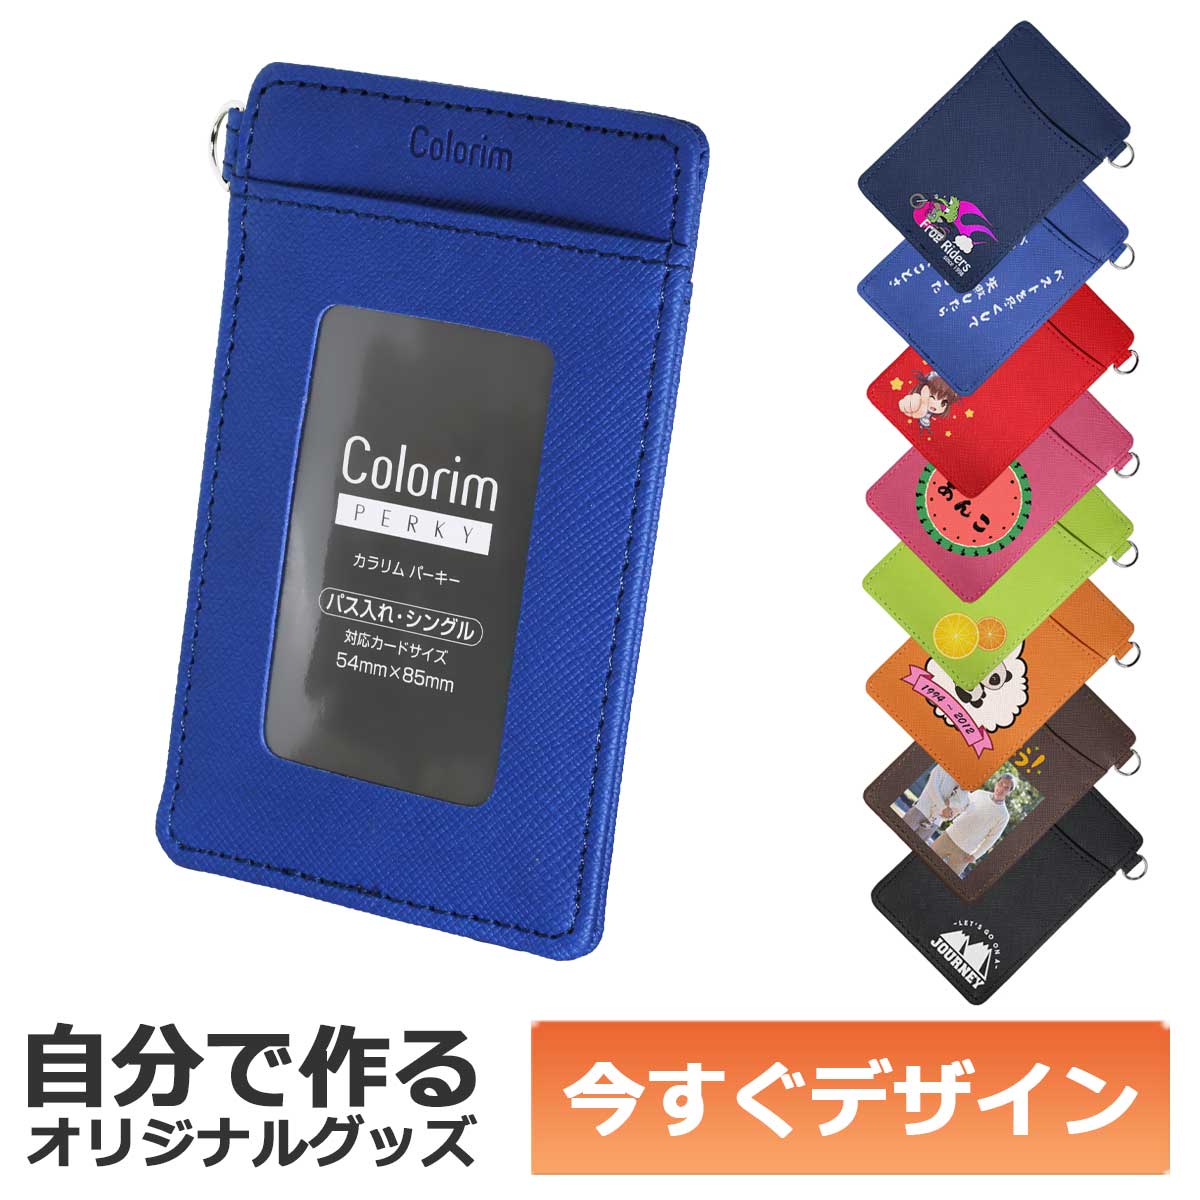 1個から作れる 自分でデザイン オリジナル パスケース シングル Colorim カラリム カードポケット ブルー CRPP-02S-L メール便可